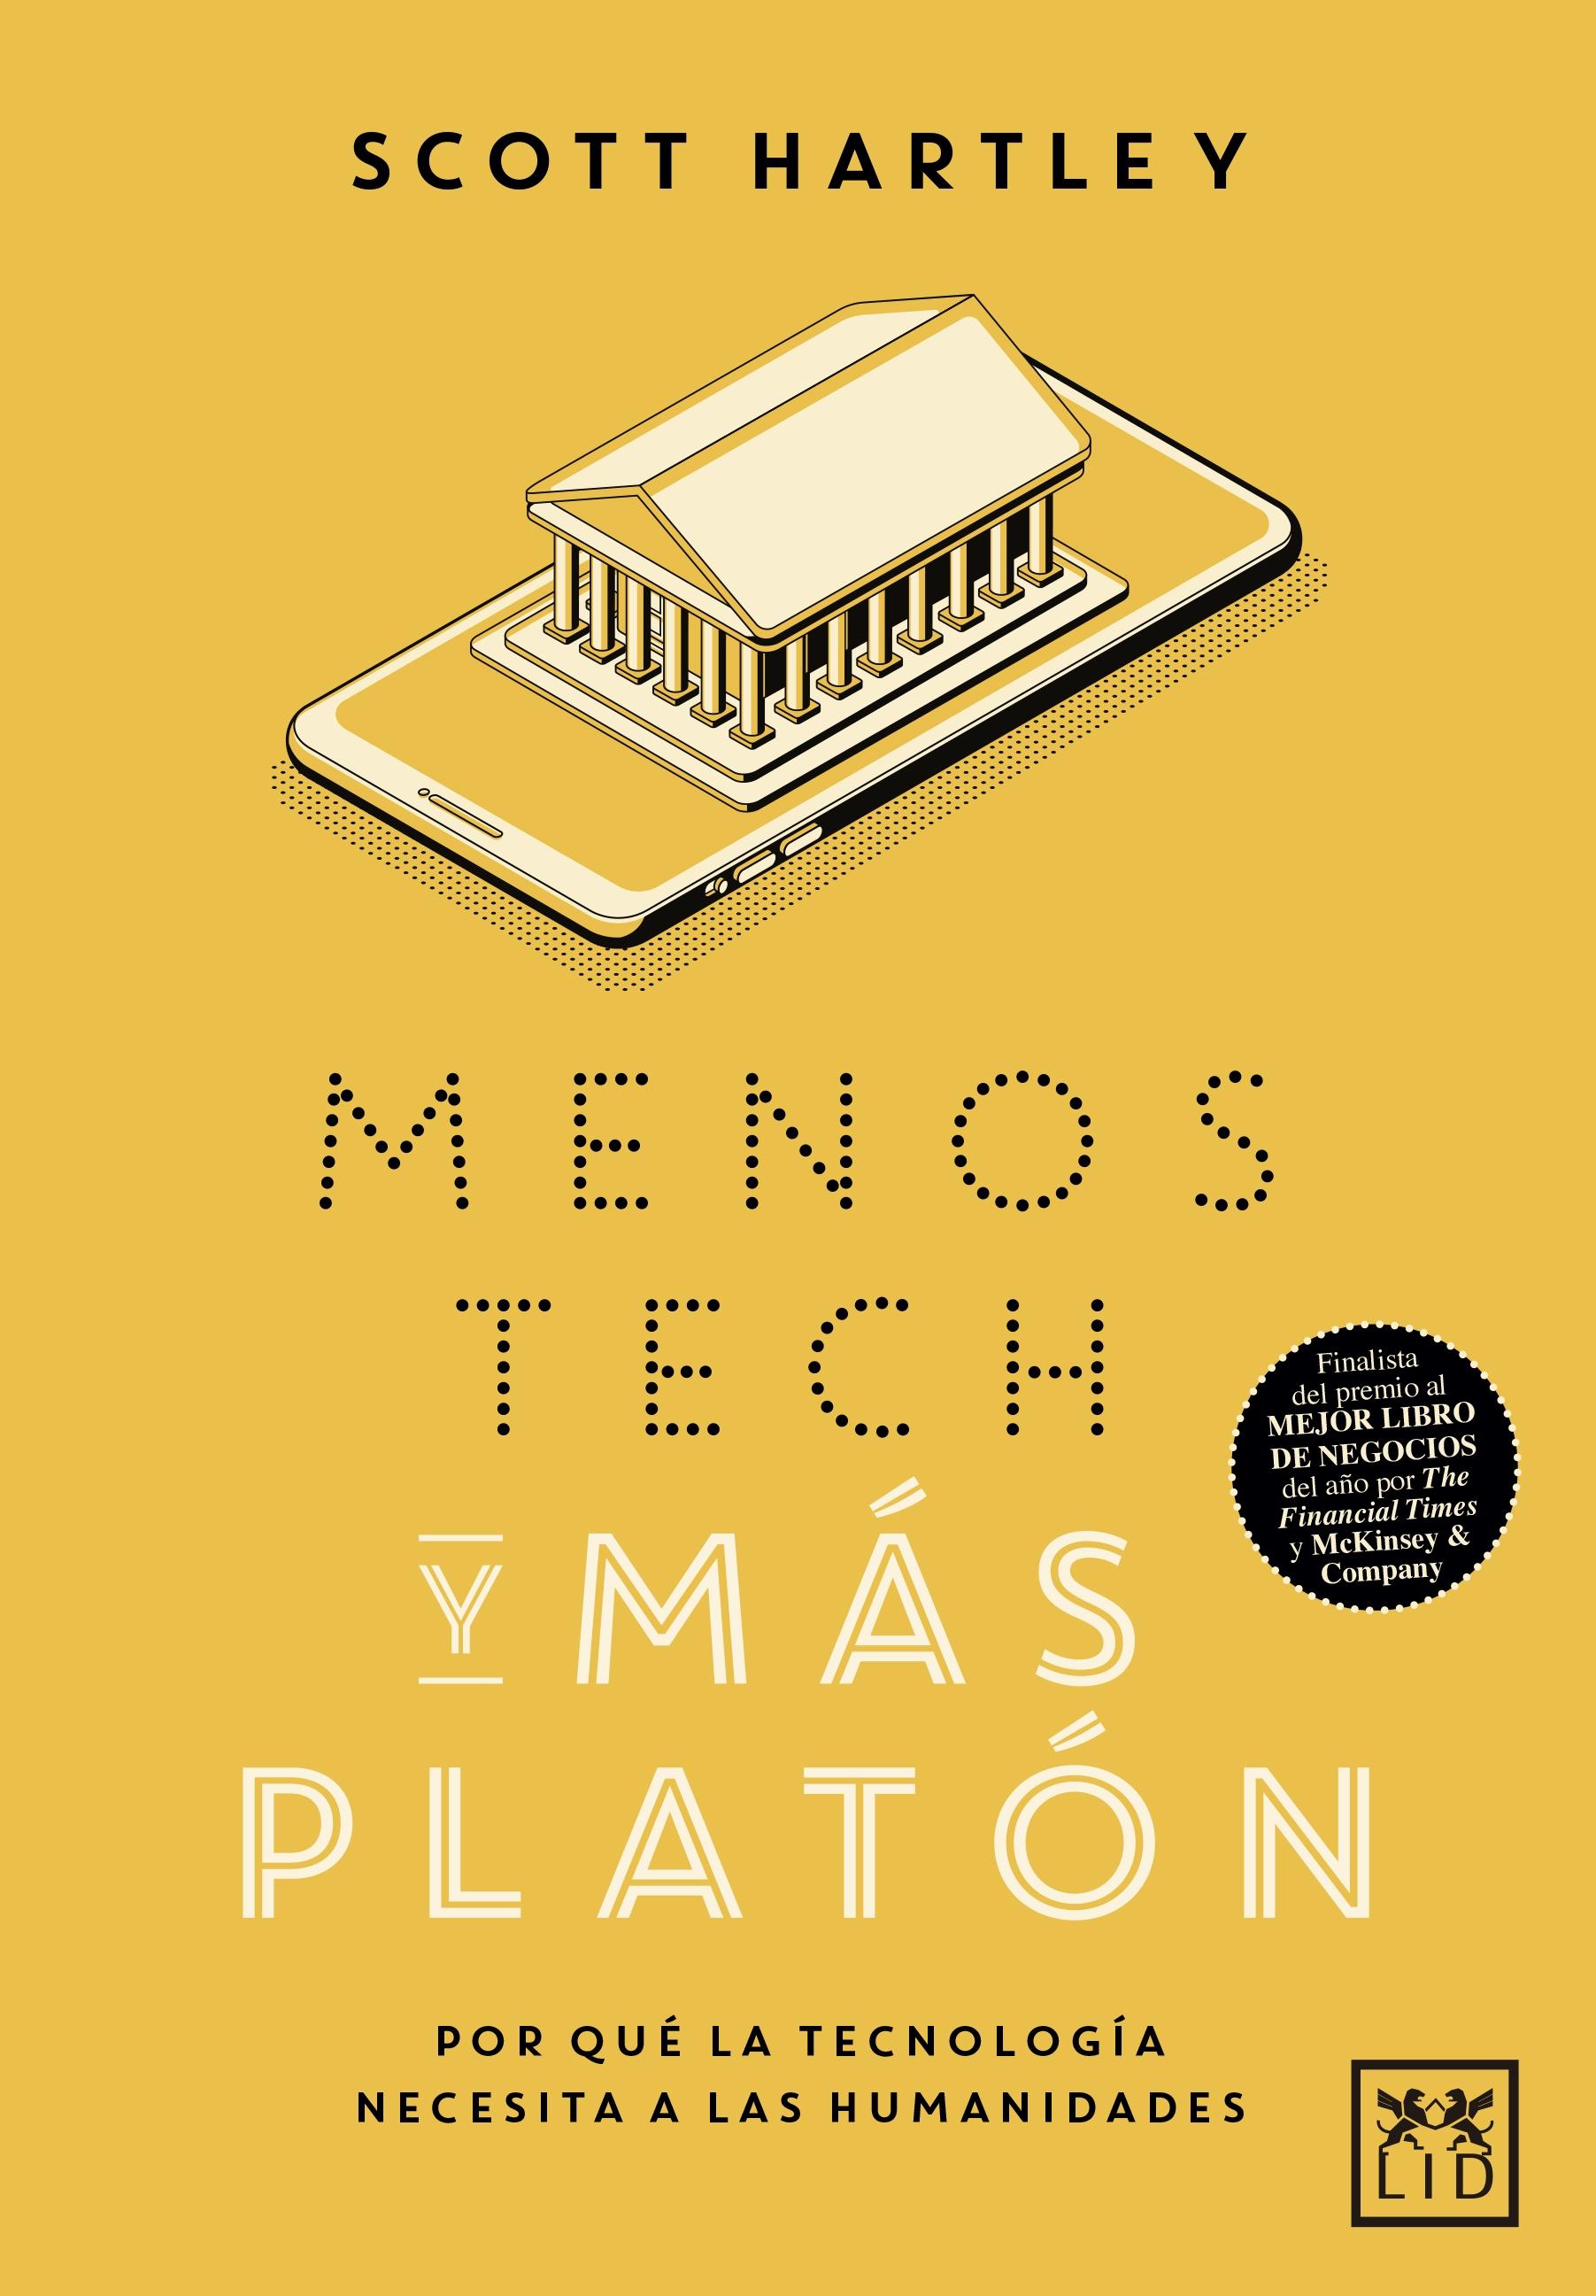 Menos Tech y más Platón "Por qué la tecnología necesita a las humanidades". 